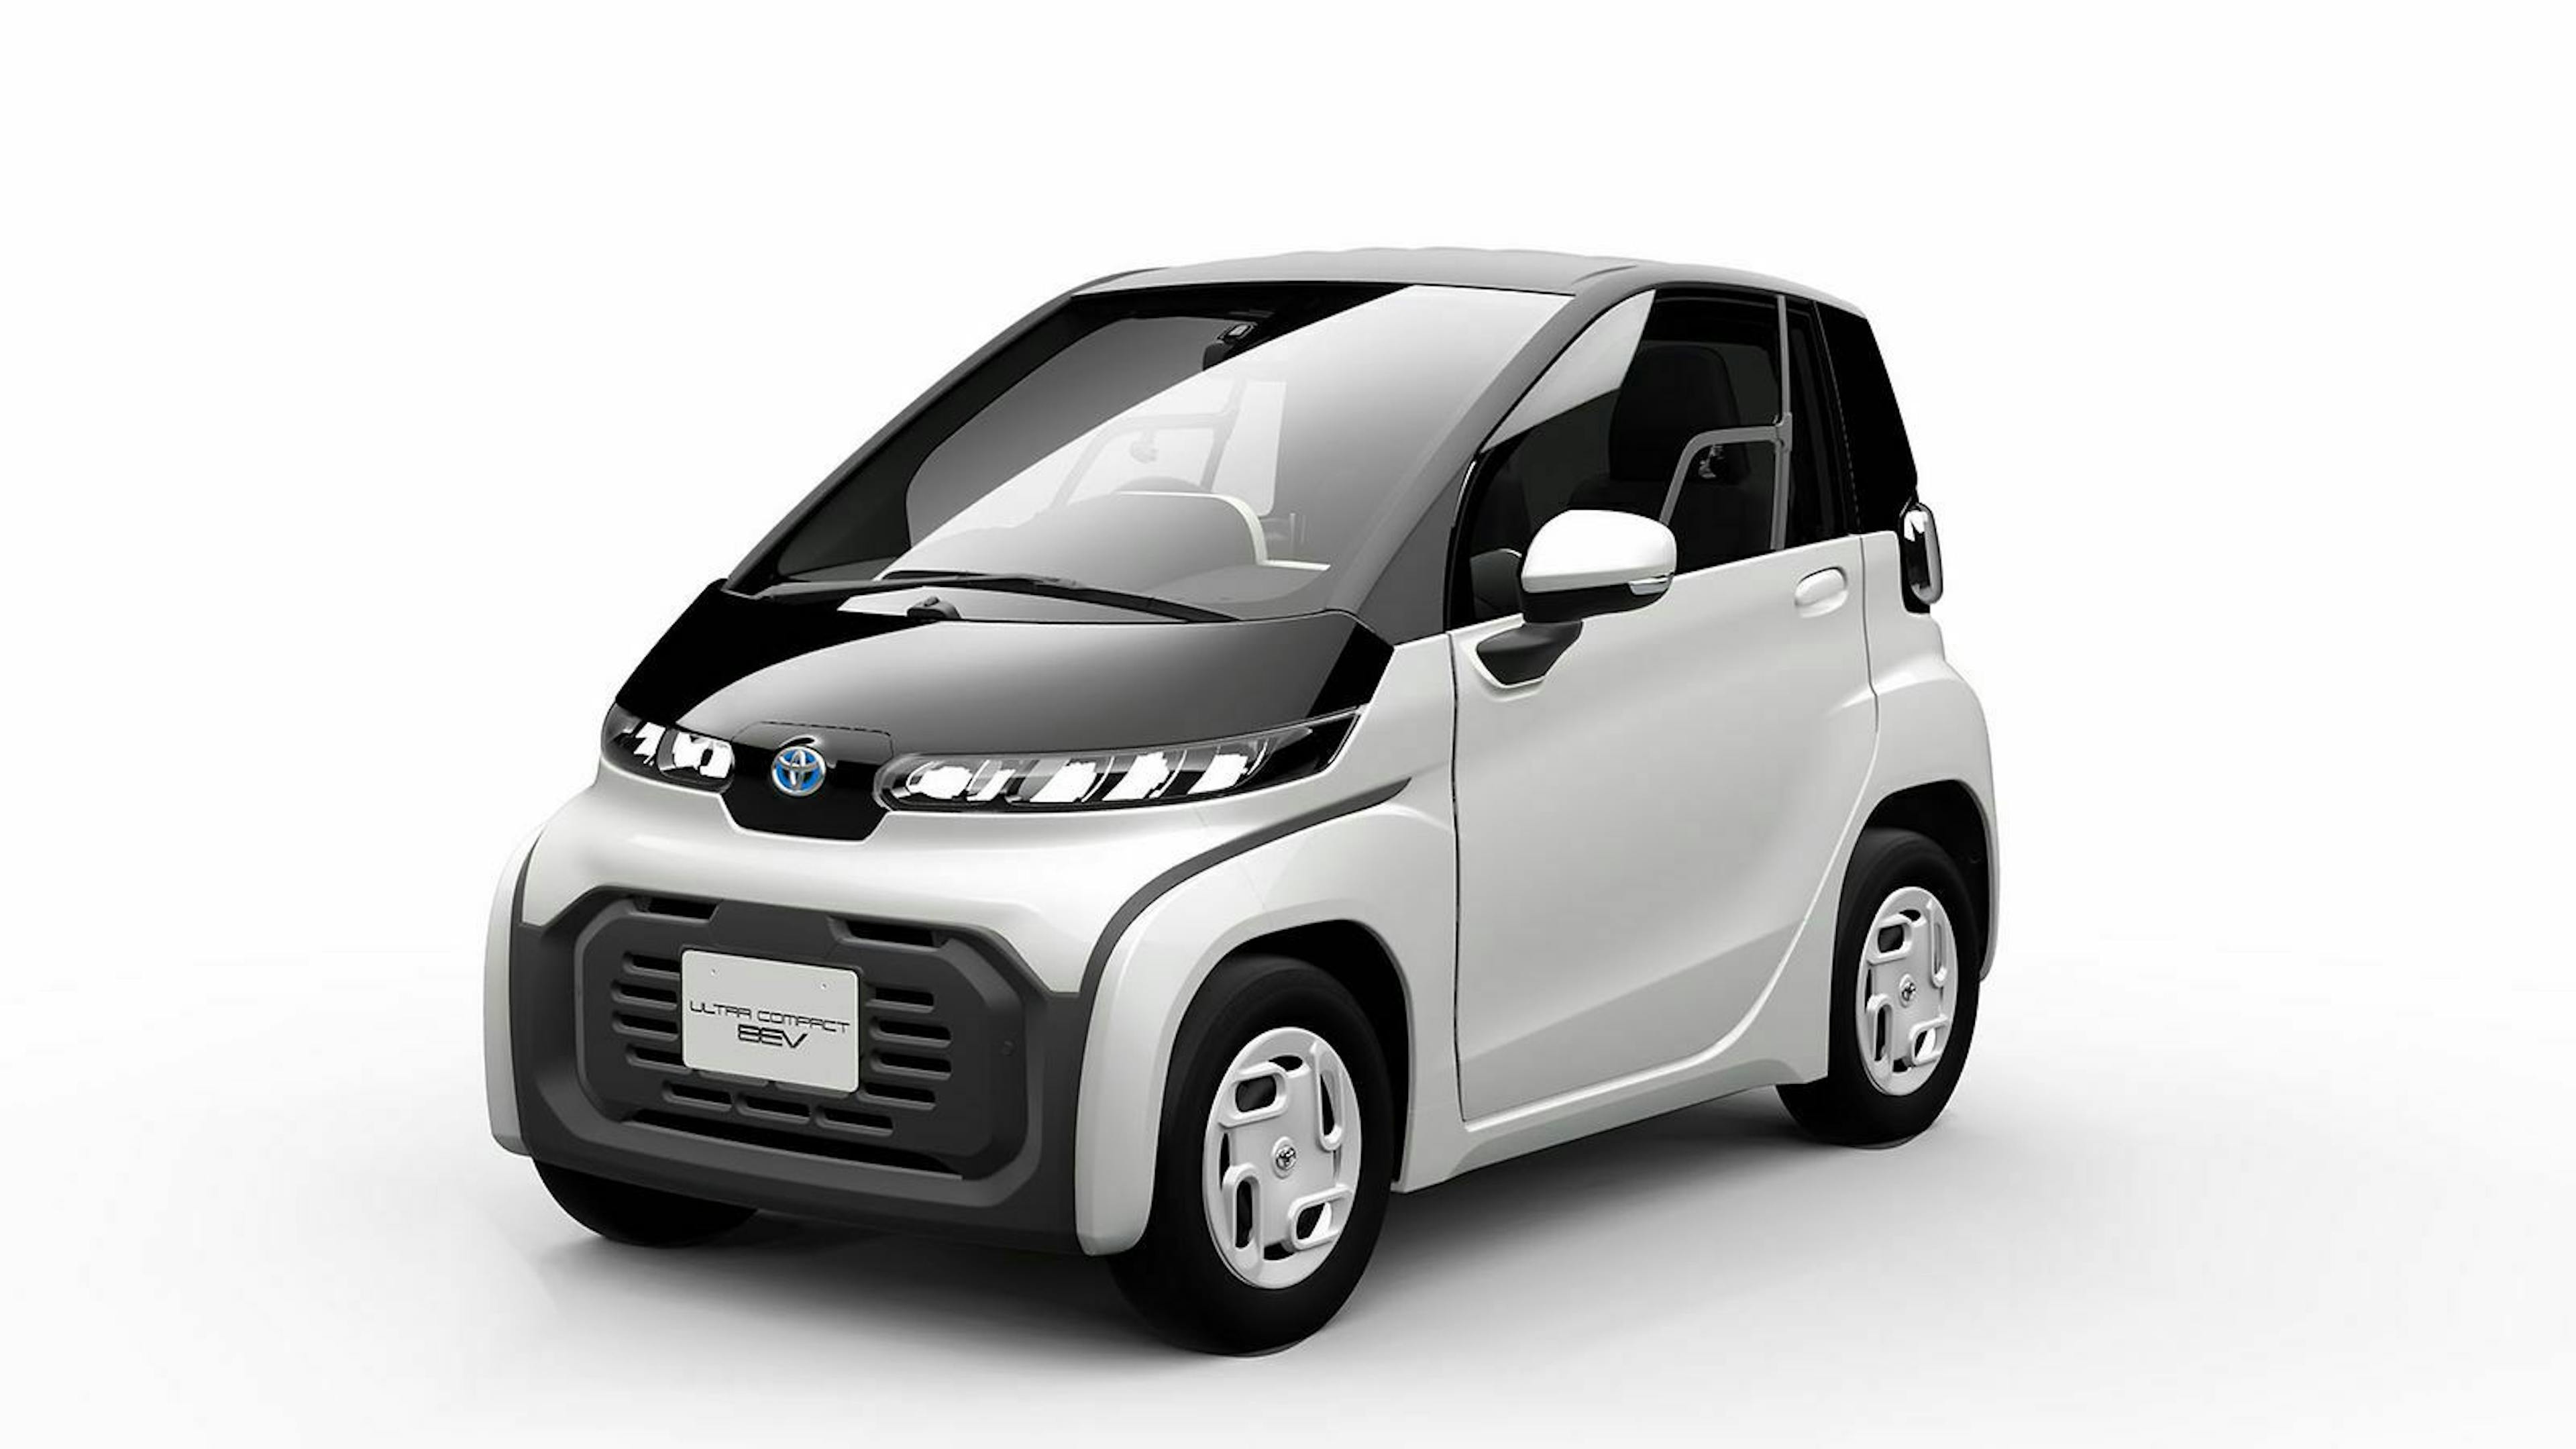 Toyota hat auf der Tokyo Motor Show ein ultrakompaktes Elektroauto mit 100 Kilometern Reichweite gezeigt